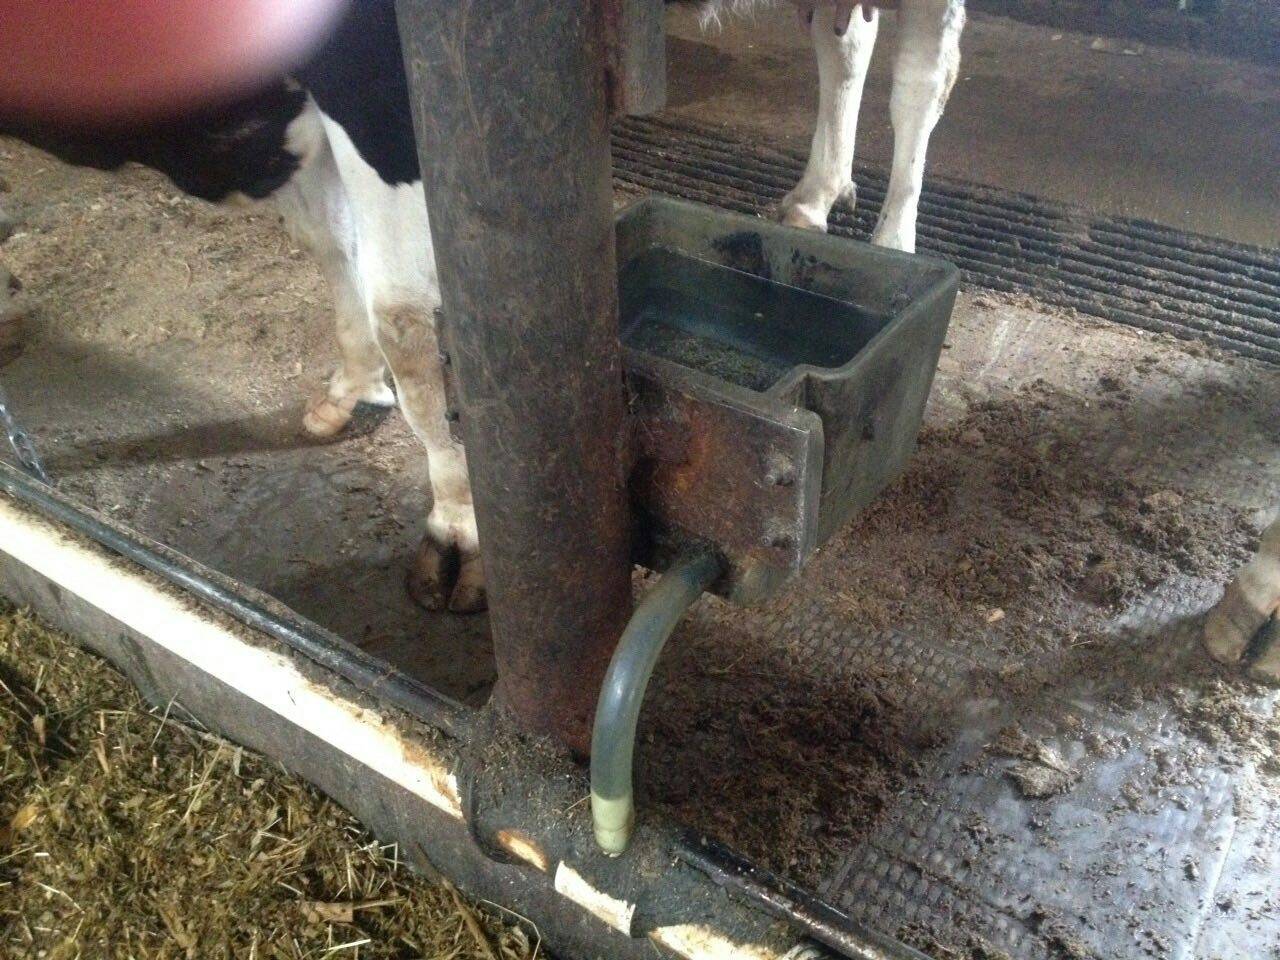 Как сделать кормушку для коровы своими руками: под сено и корм